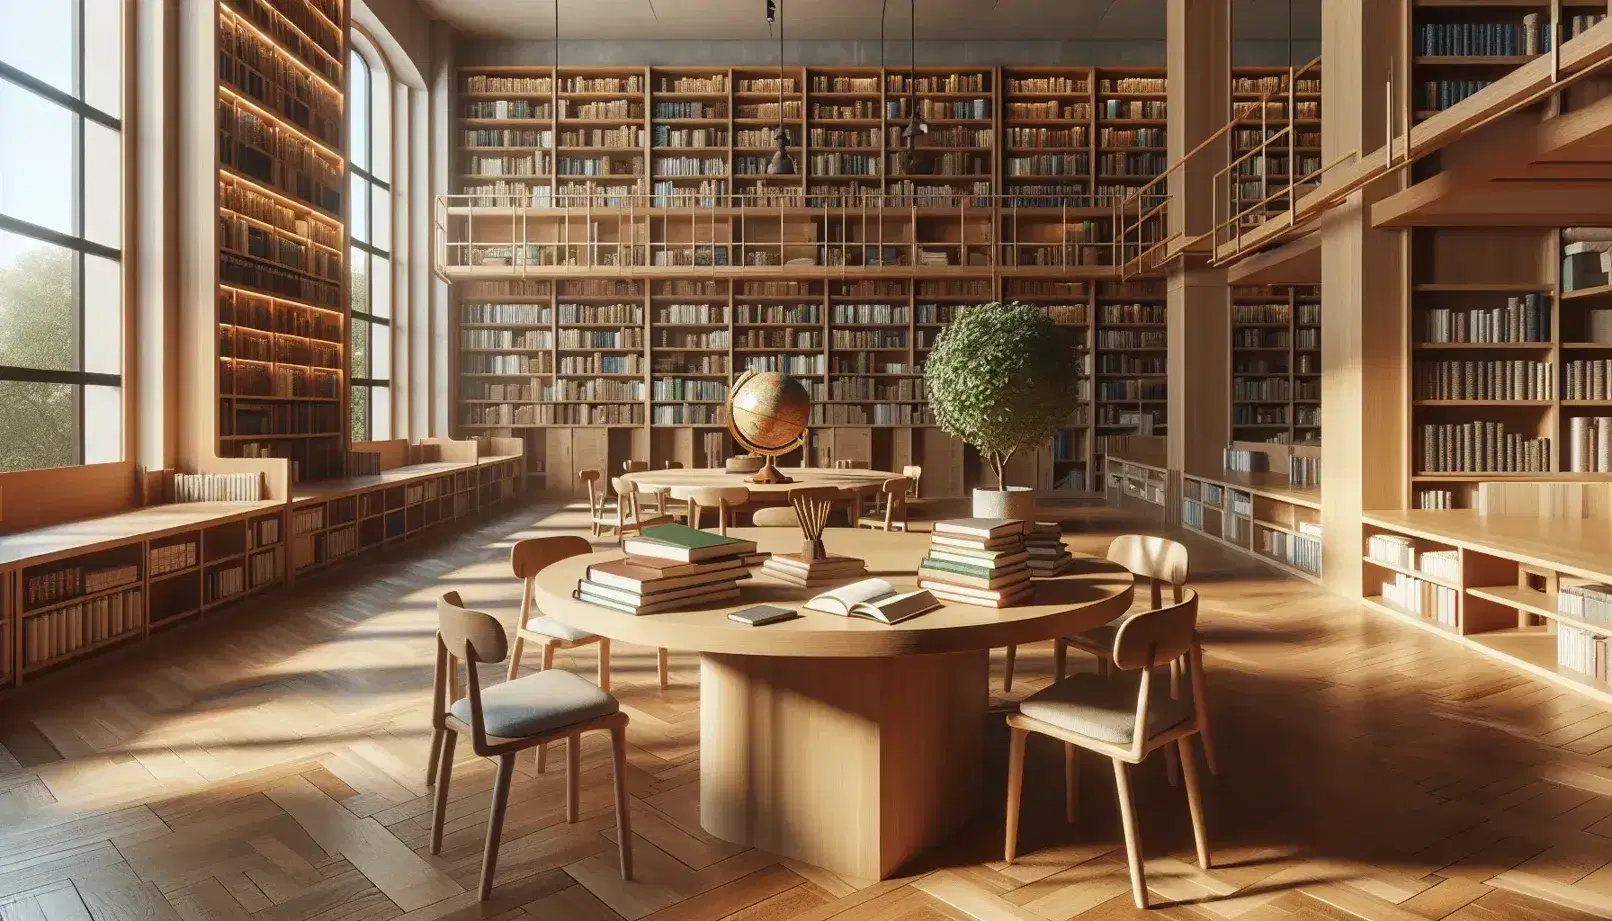 Biblioteca luminosa con estanterías de madera llenas de libros, mesa central con libros abiertos, globo terráqueo y planta verde, bajo la luz natural de un gran ventanal.